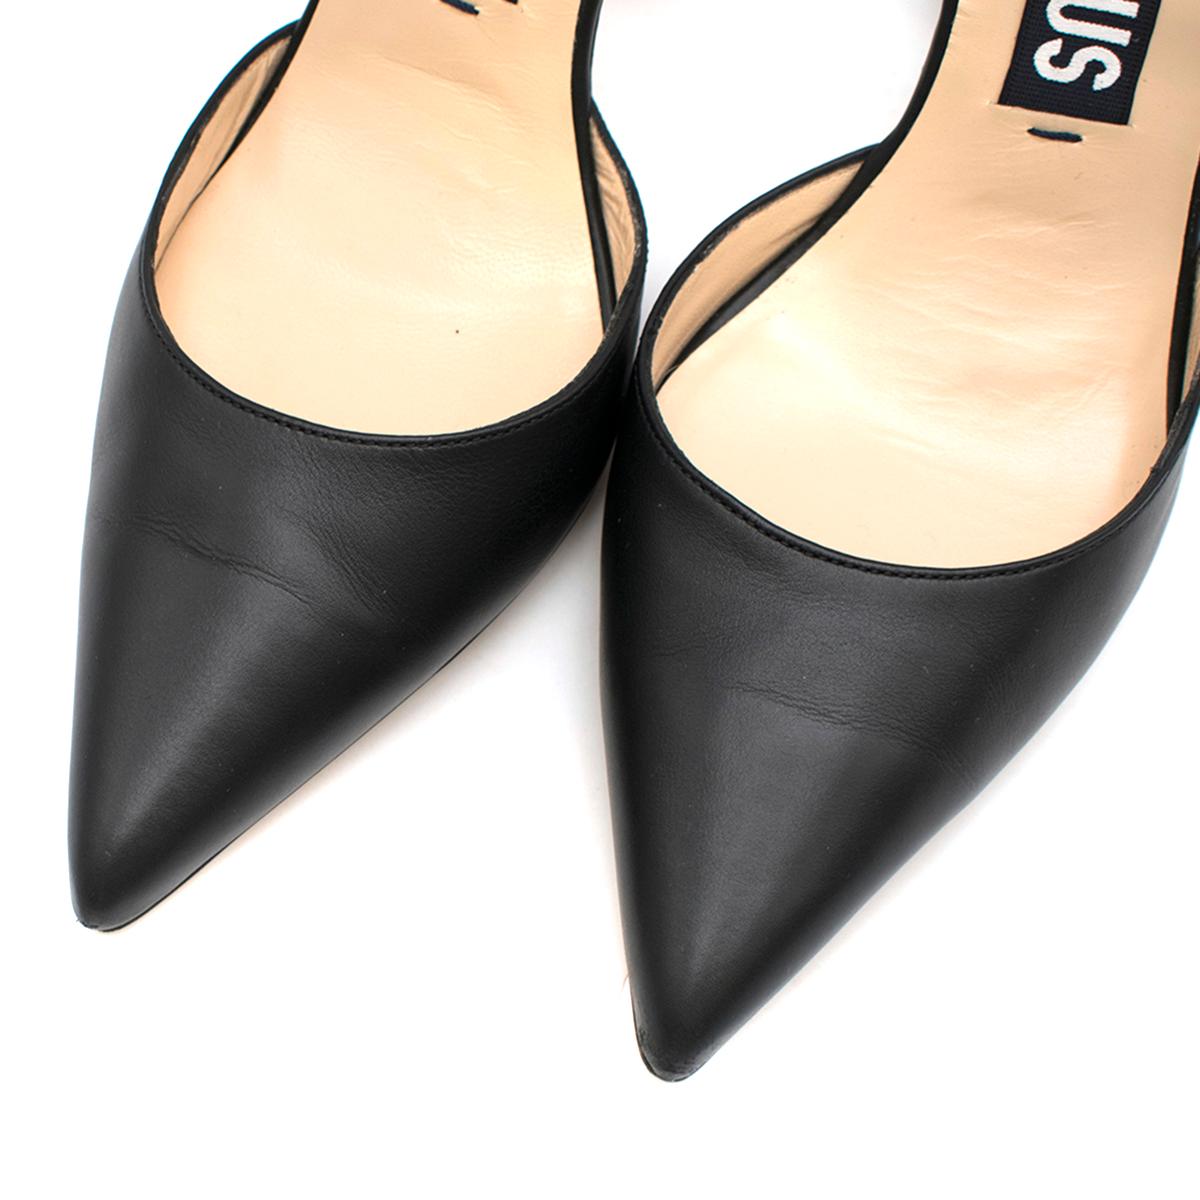 Women's Jacquemus Les chaussures Camil Black Leather Pumps SIZE 41